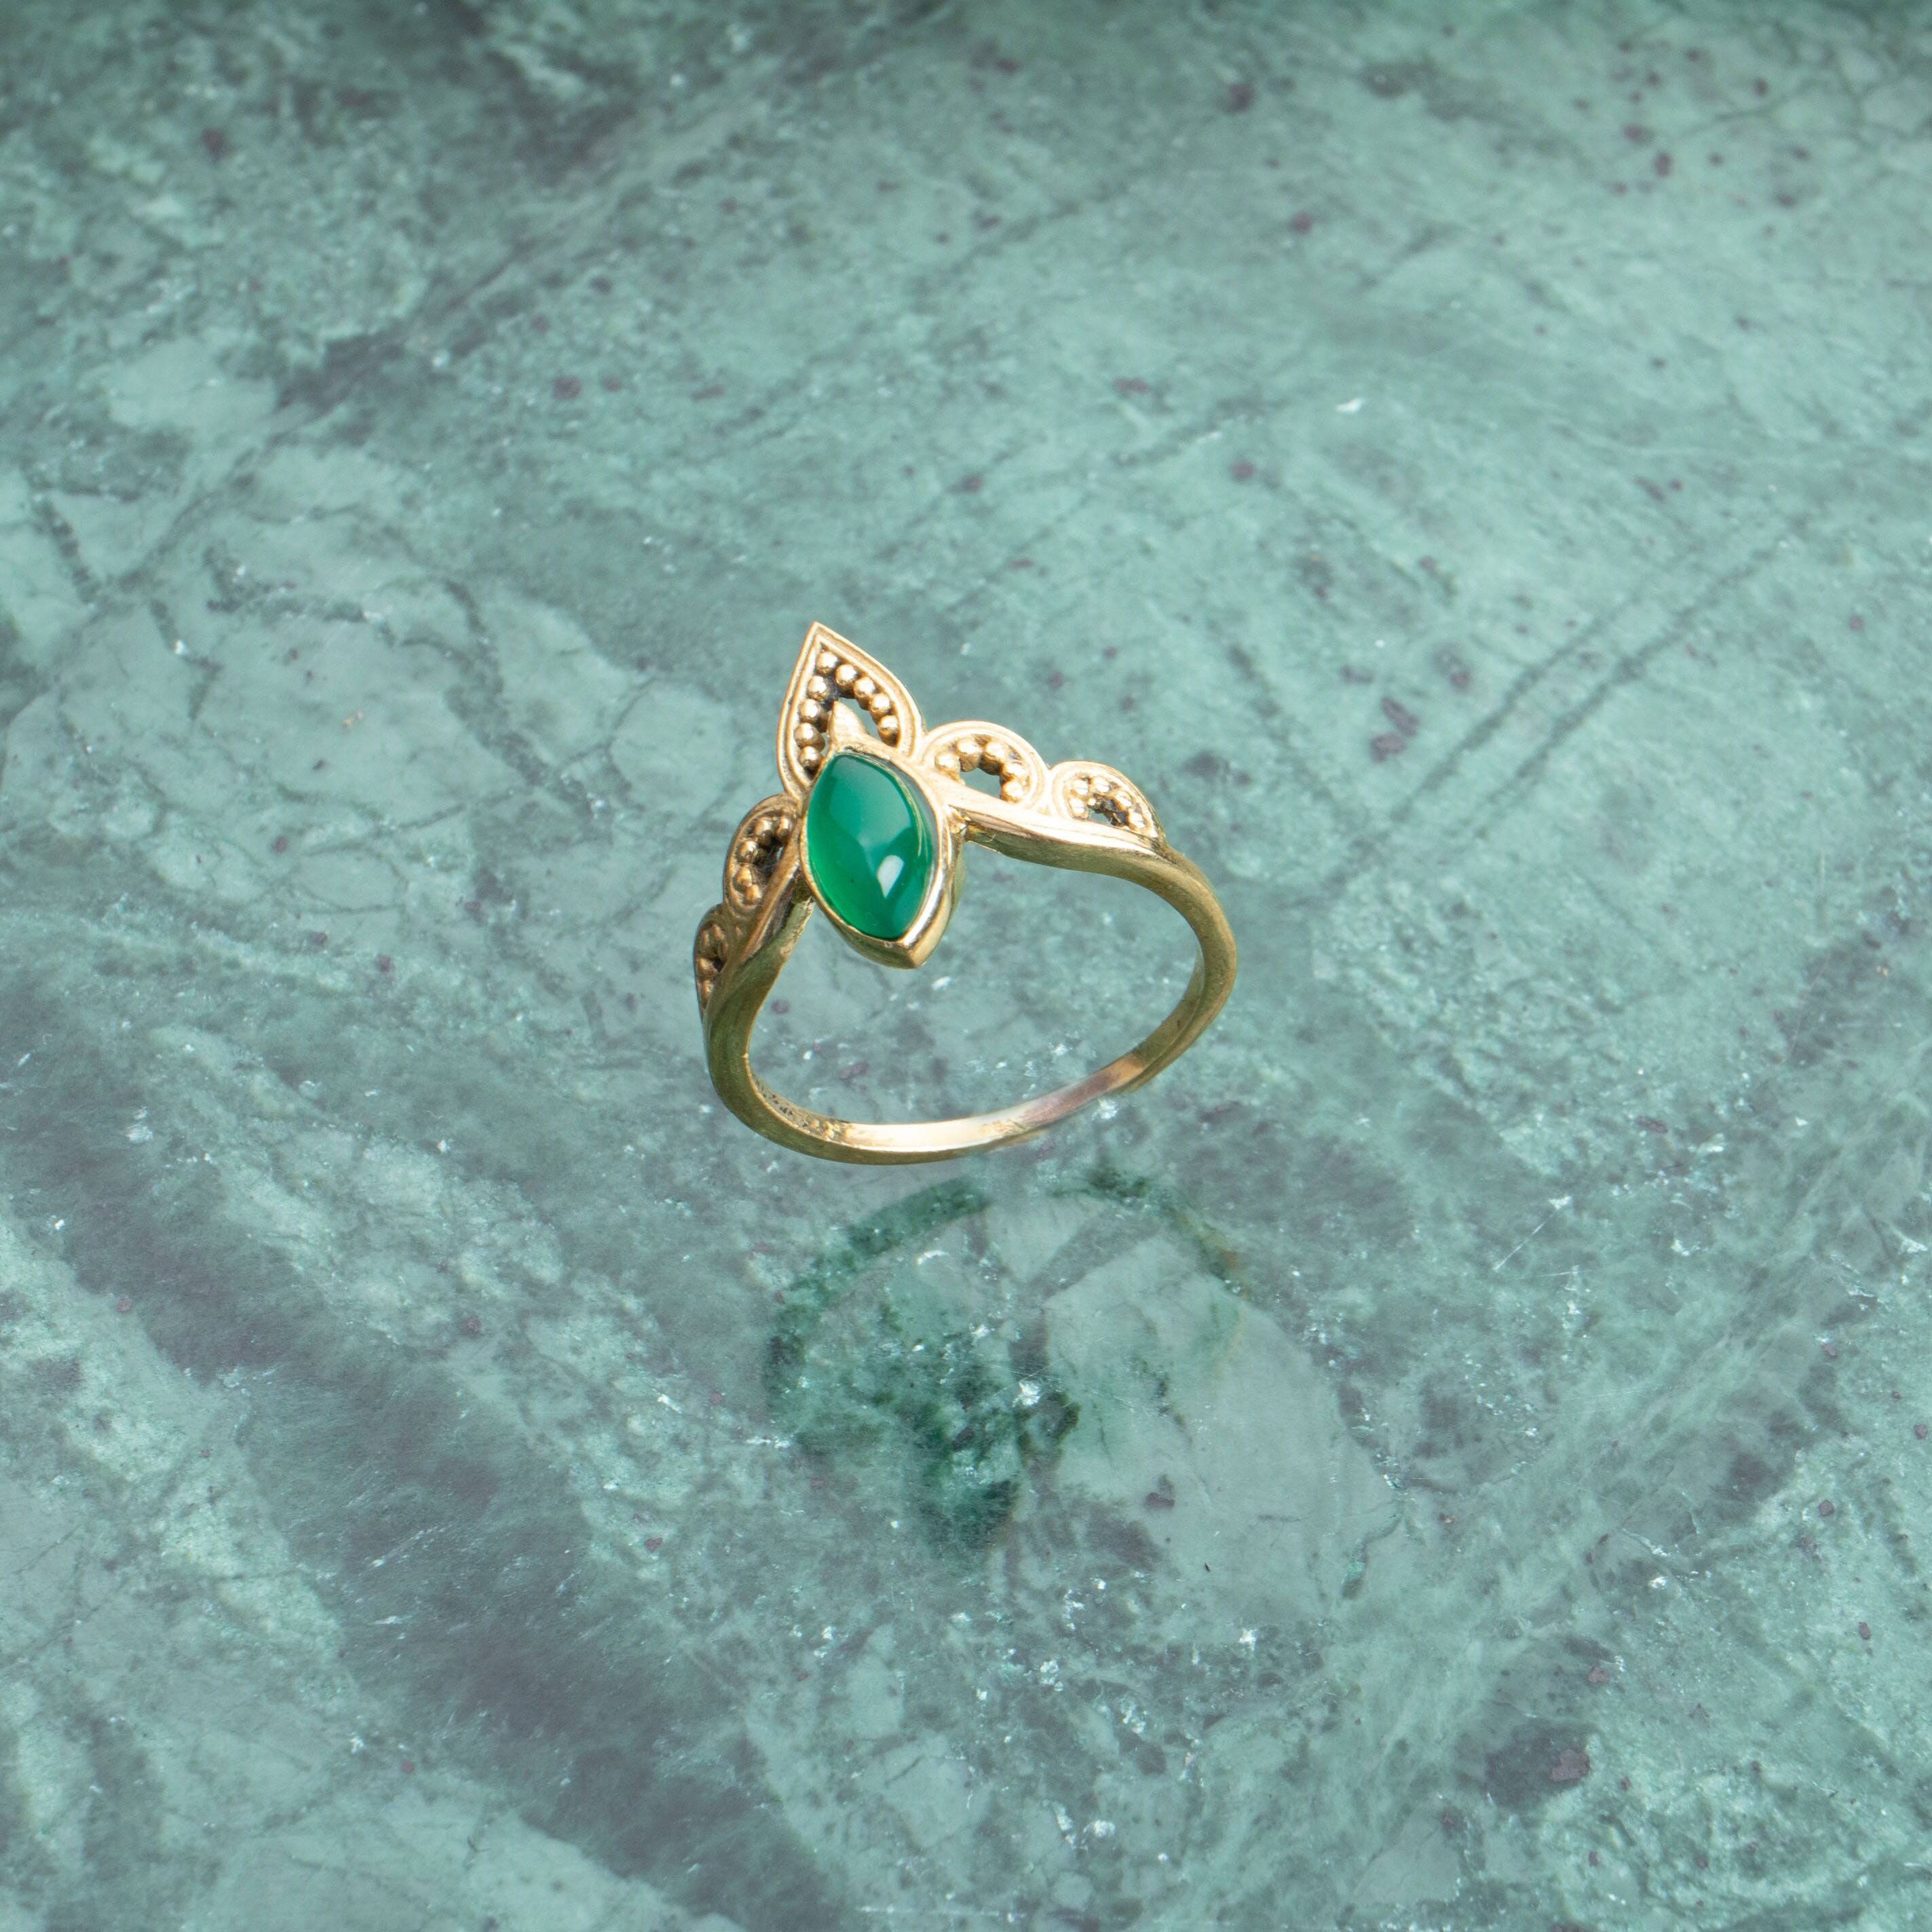 Auge Kronen Ring mit grünem Onyx gold handgemacht - NooeBerlin